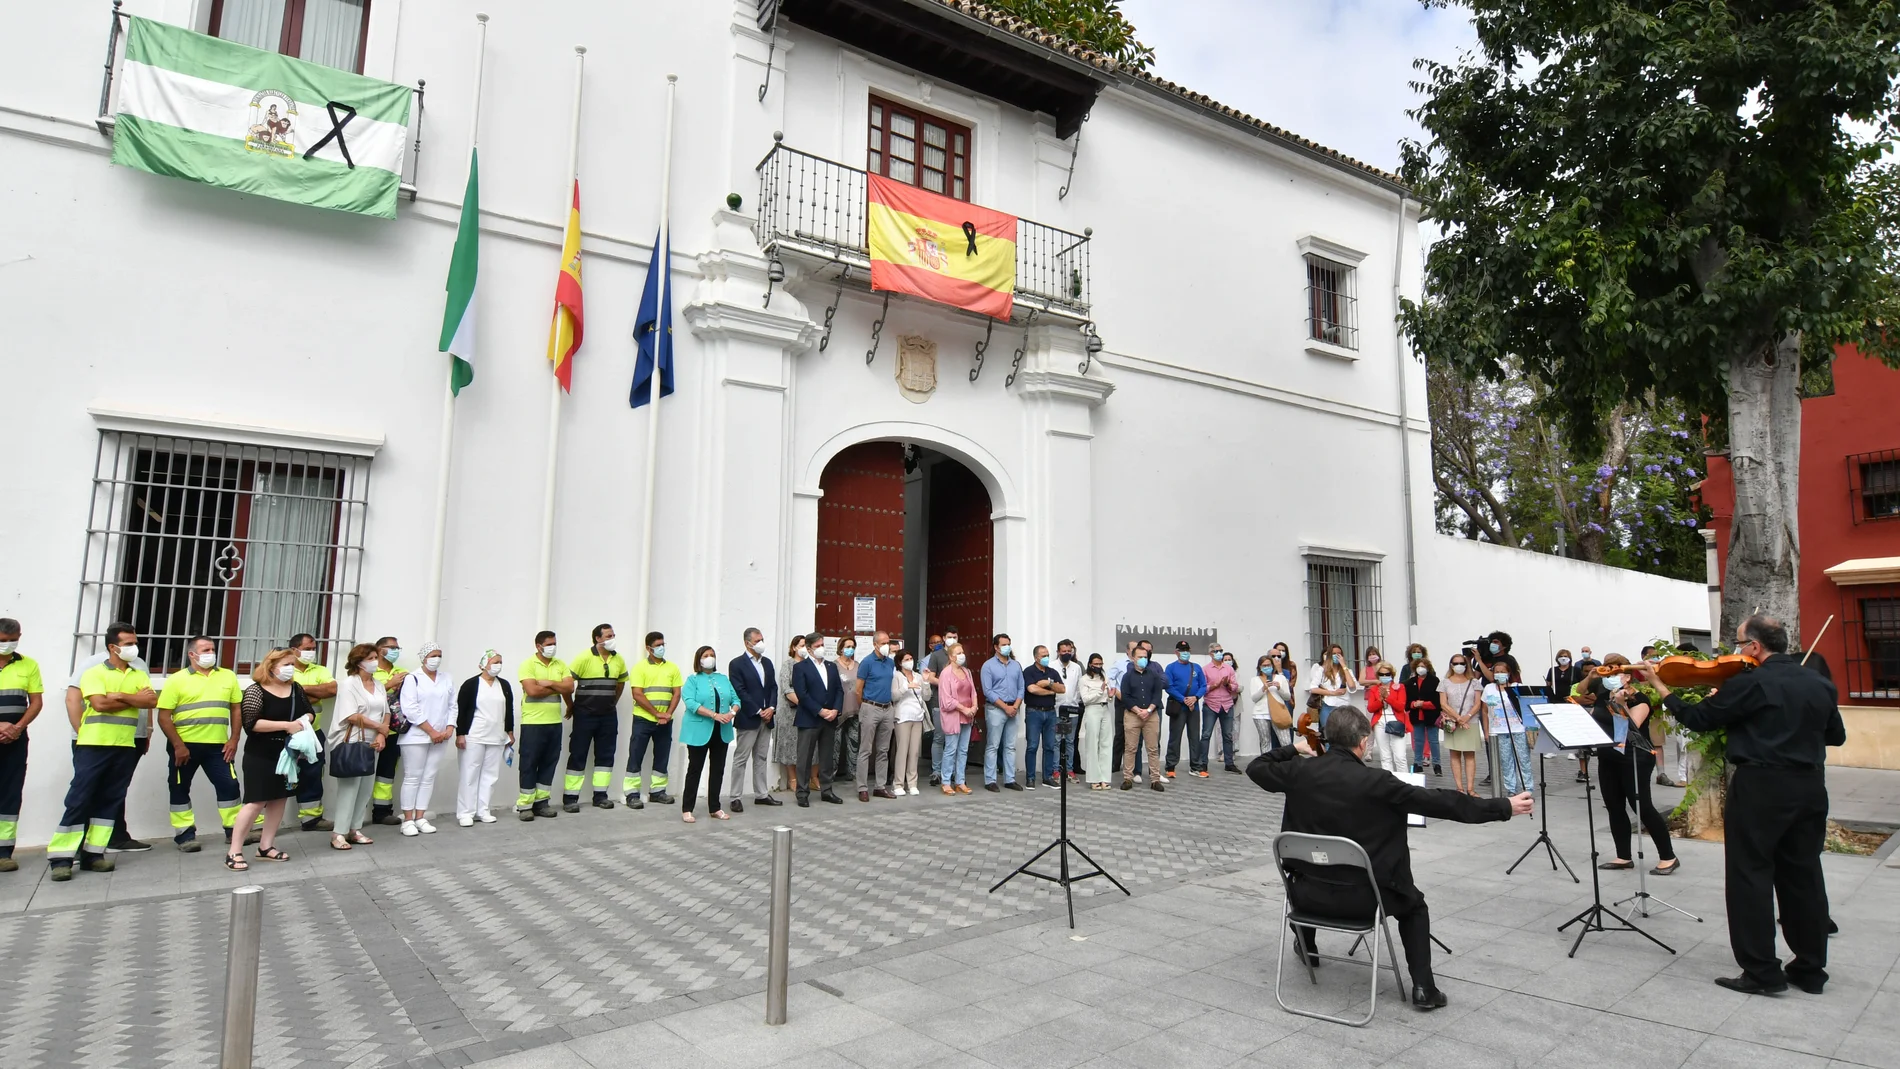 Acto realizado frente al Ayuntamiento de Tomares